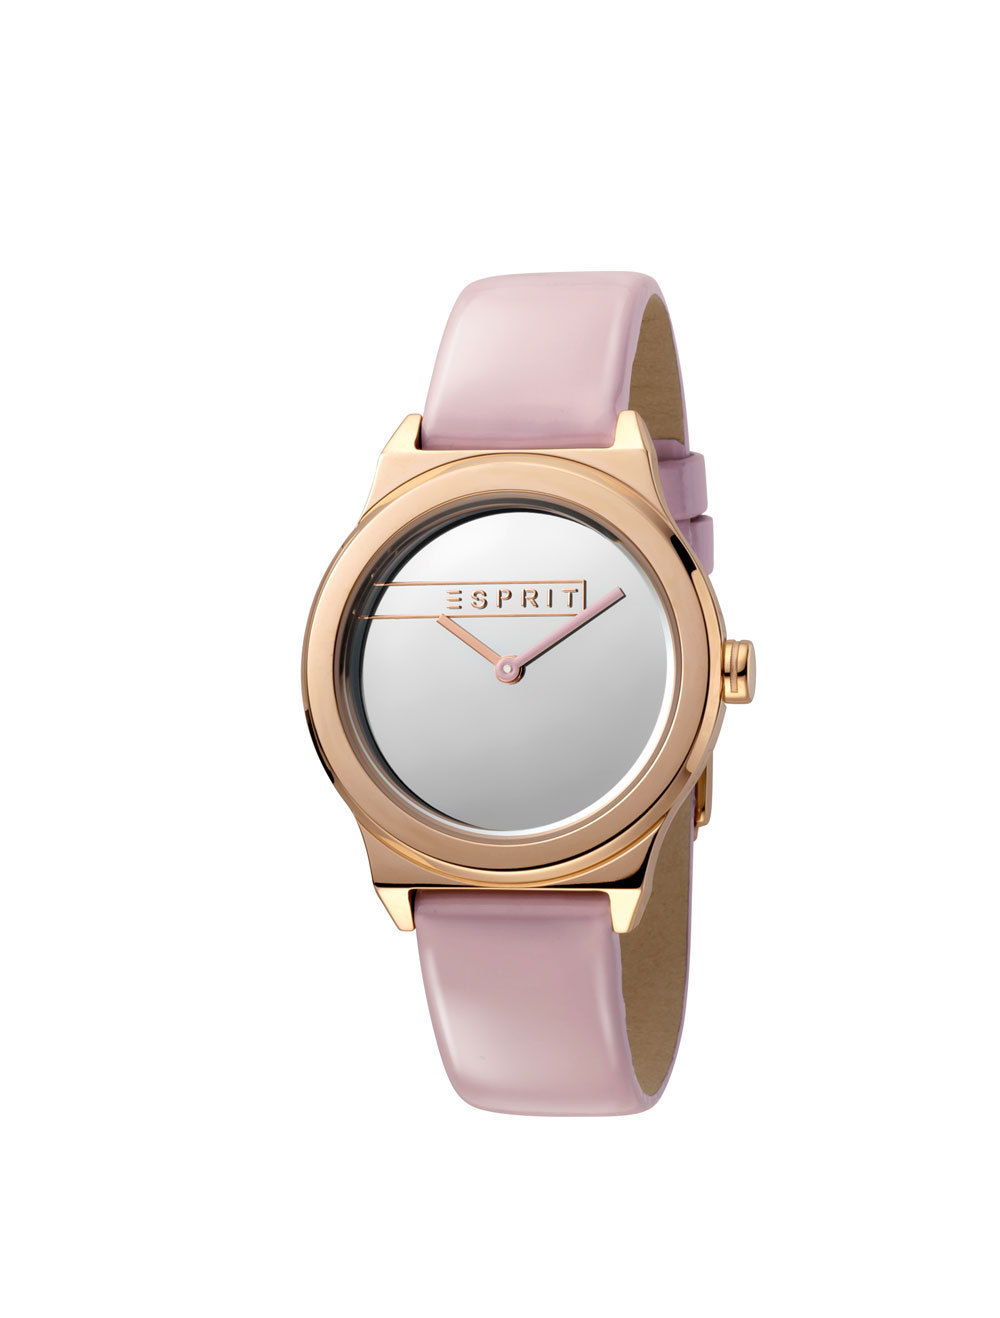 Esprit ES1L019L0045 Magnolia Silver Pink Patent horloge